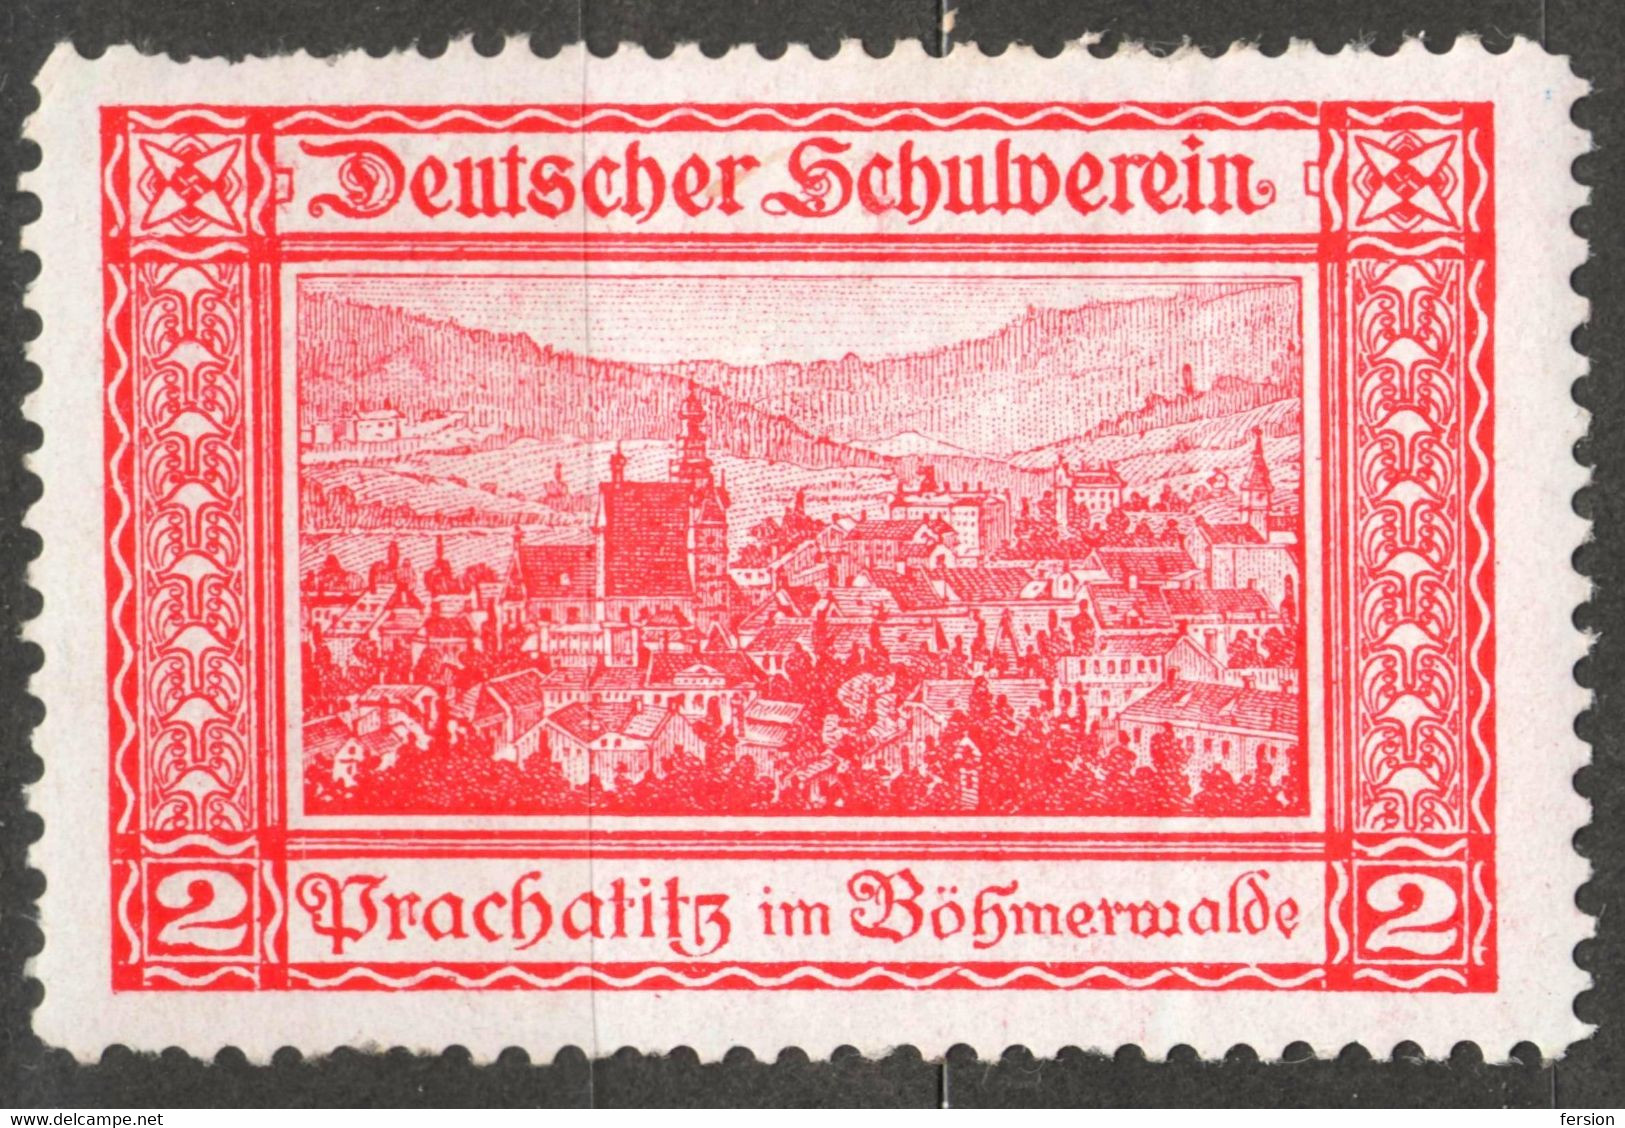 Prachatice Prachatitz CATHEDRAL Czechia Bohemia Germany Austria Label Cinderella Vignette SCHOOL Deutscher Schulverein - ...-1918 Prephilately